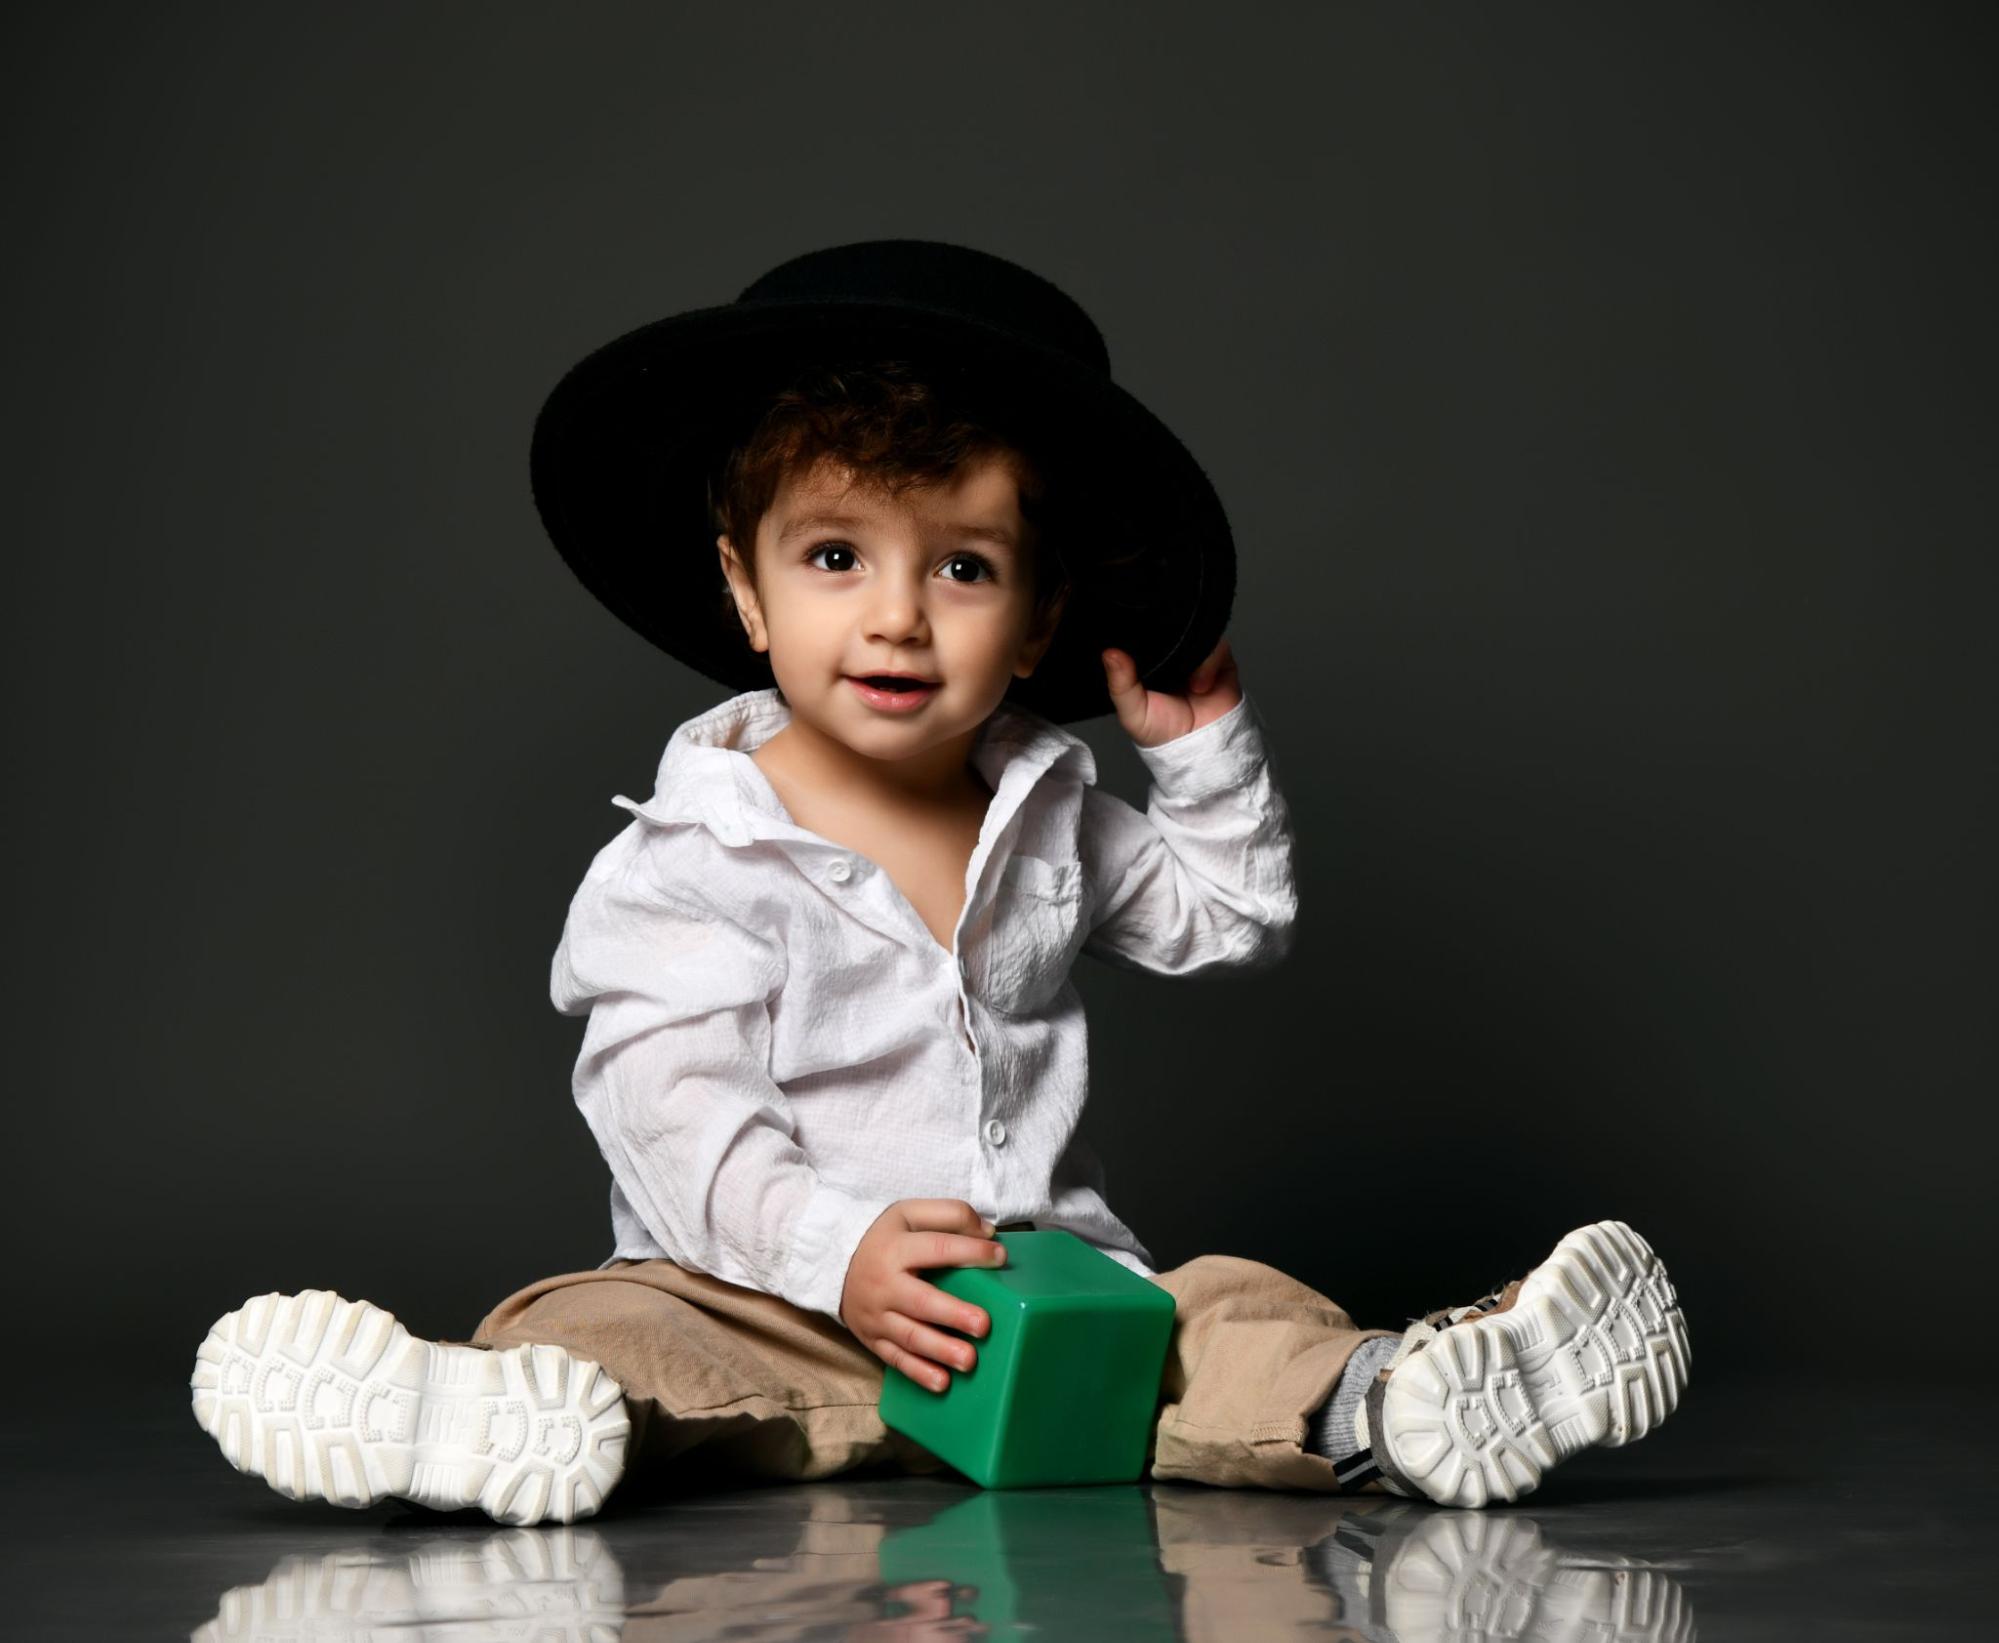 Fashion-forward cuteness: Cute 6-Month Baby's At-Home Fashion Shoot